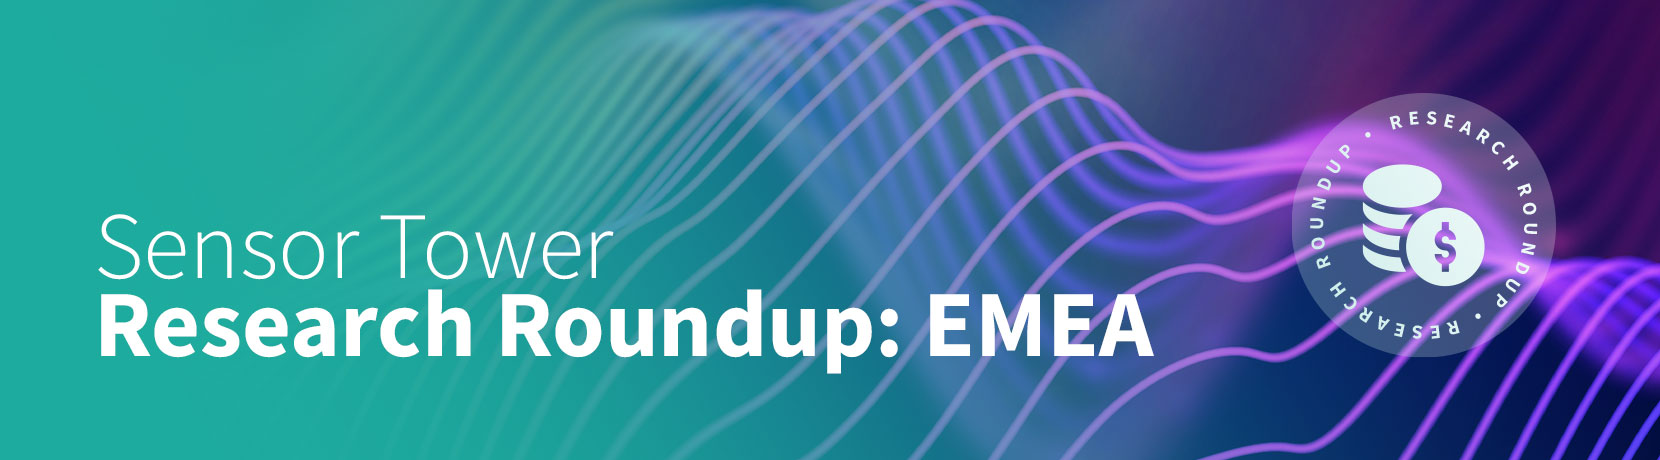 LP-header EMEA Roundup